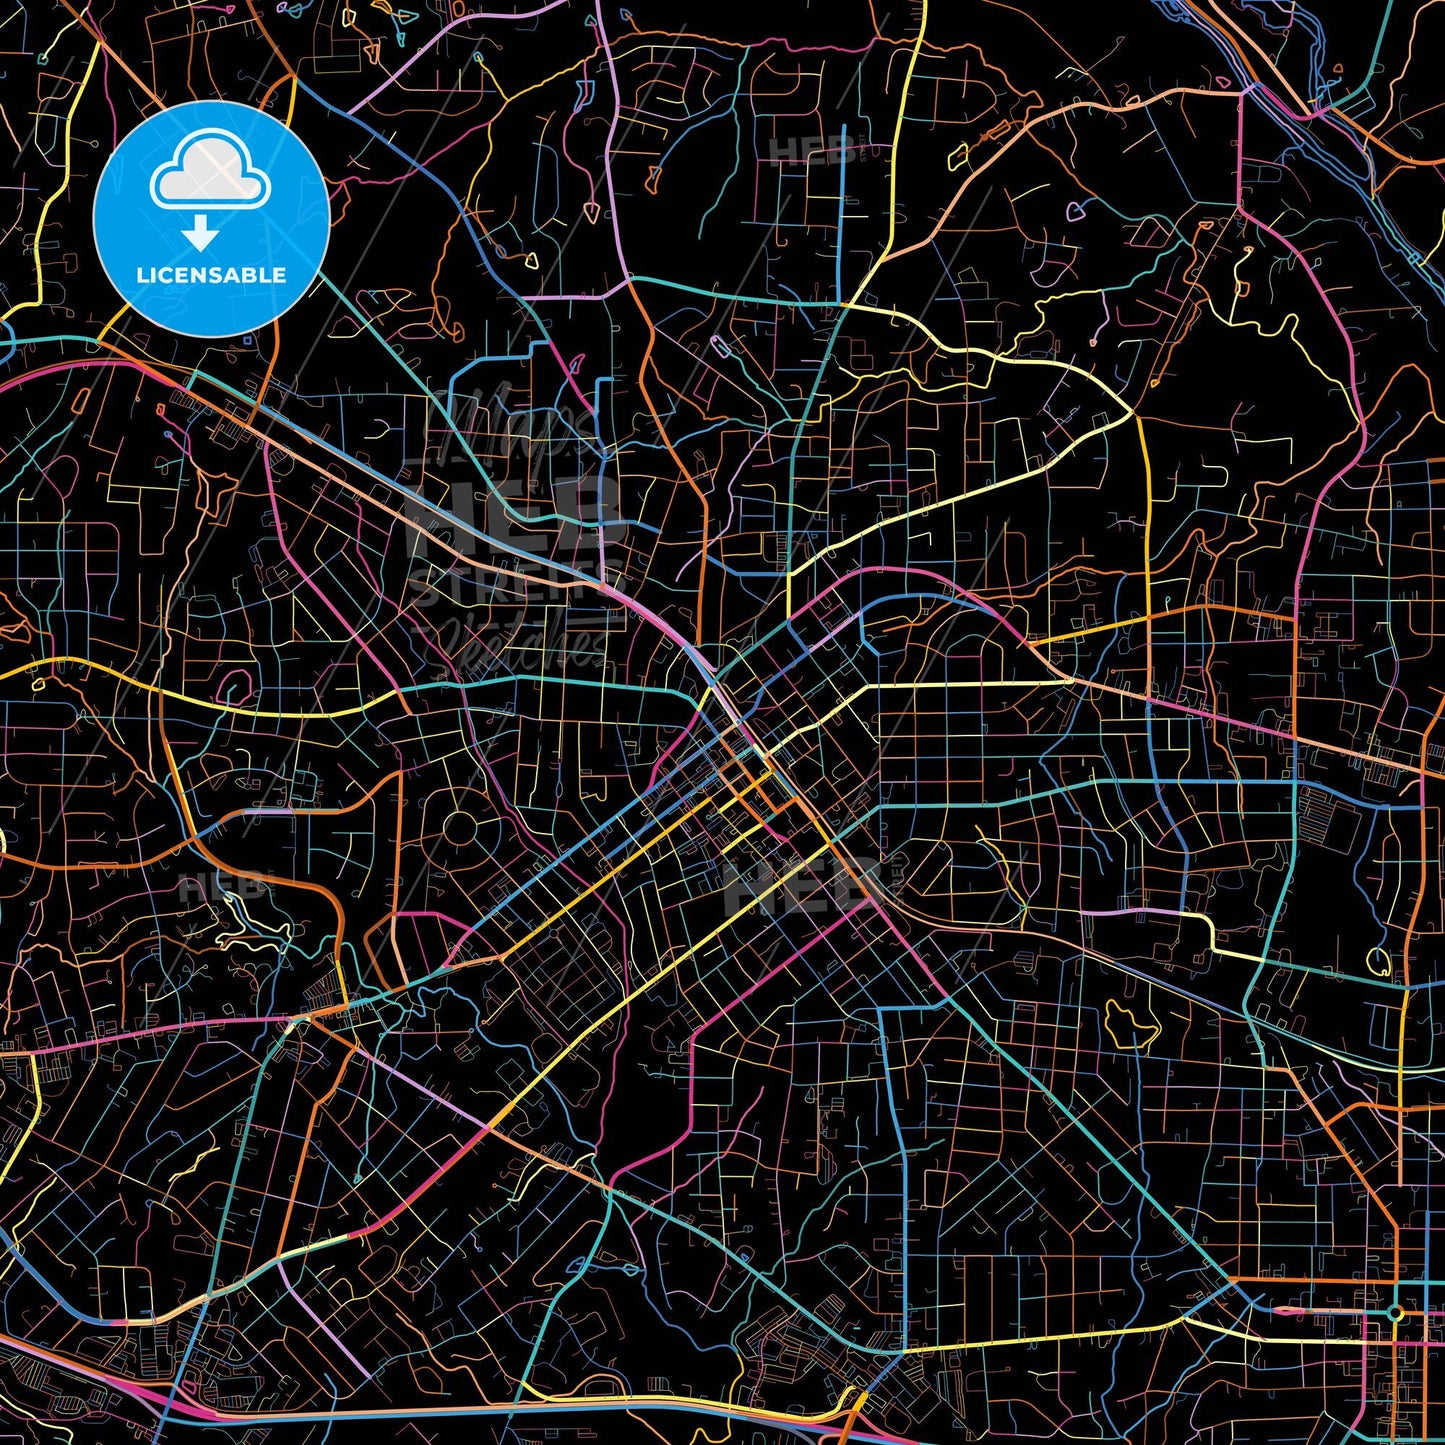 Burlington, North Carolina, United States, colorful city map on black background